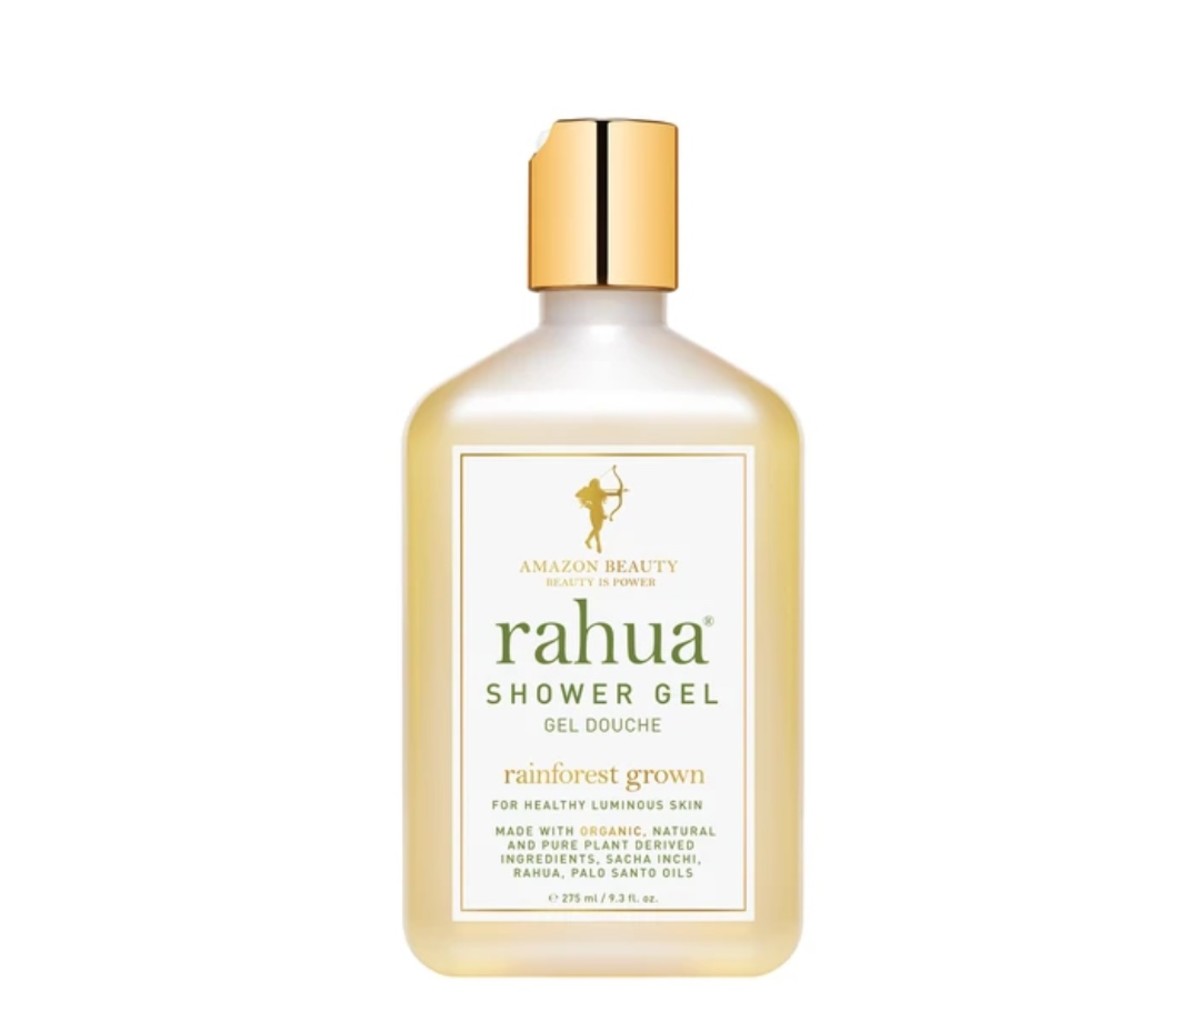 Rahua’s Organic Shower Gel